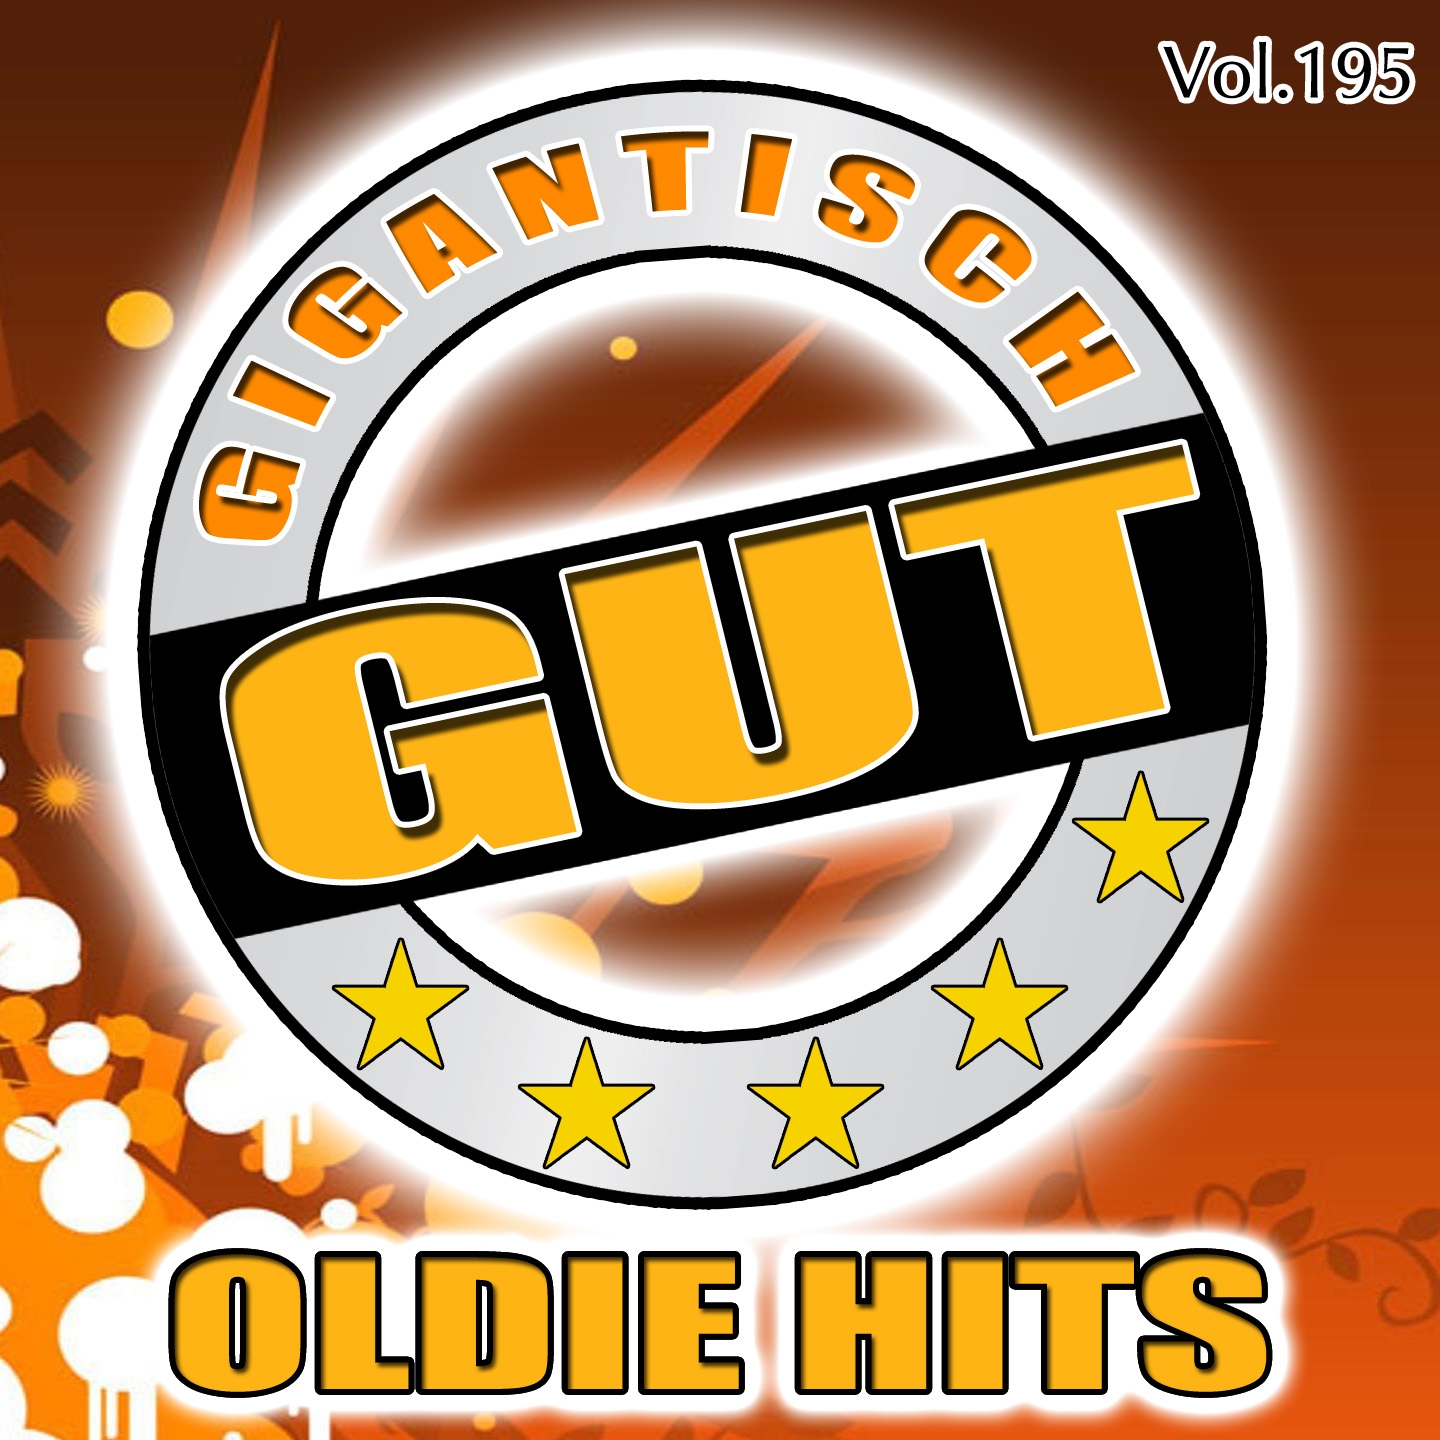 Gigantisch Gut: Oldie Hits, Vol. 195